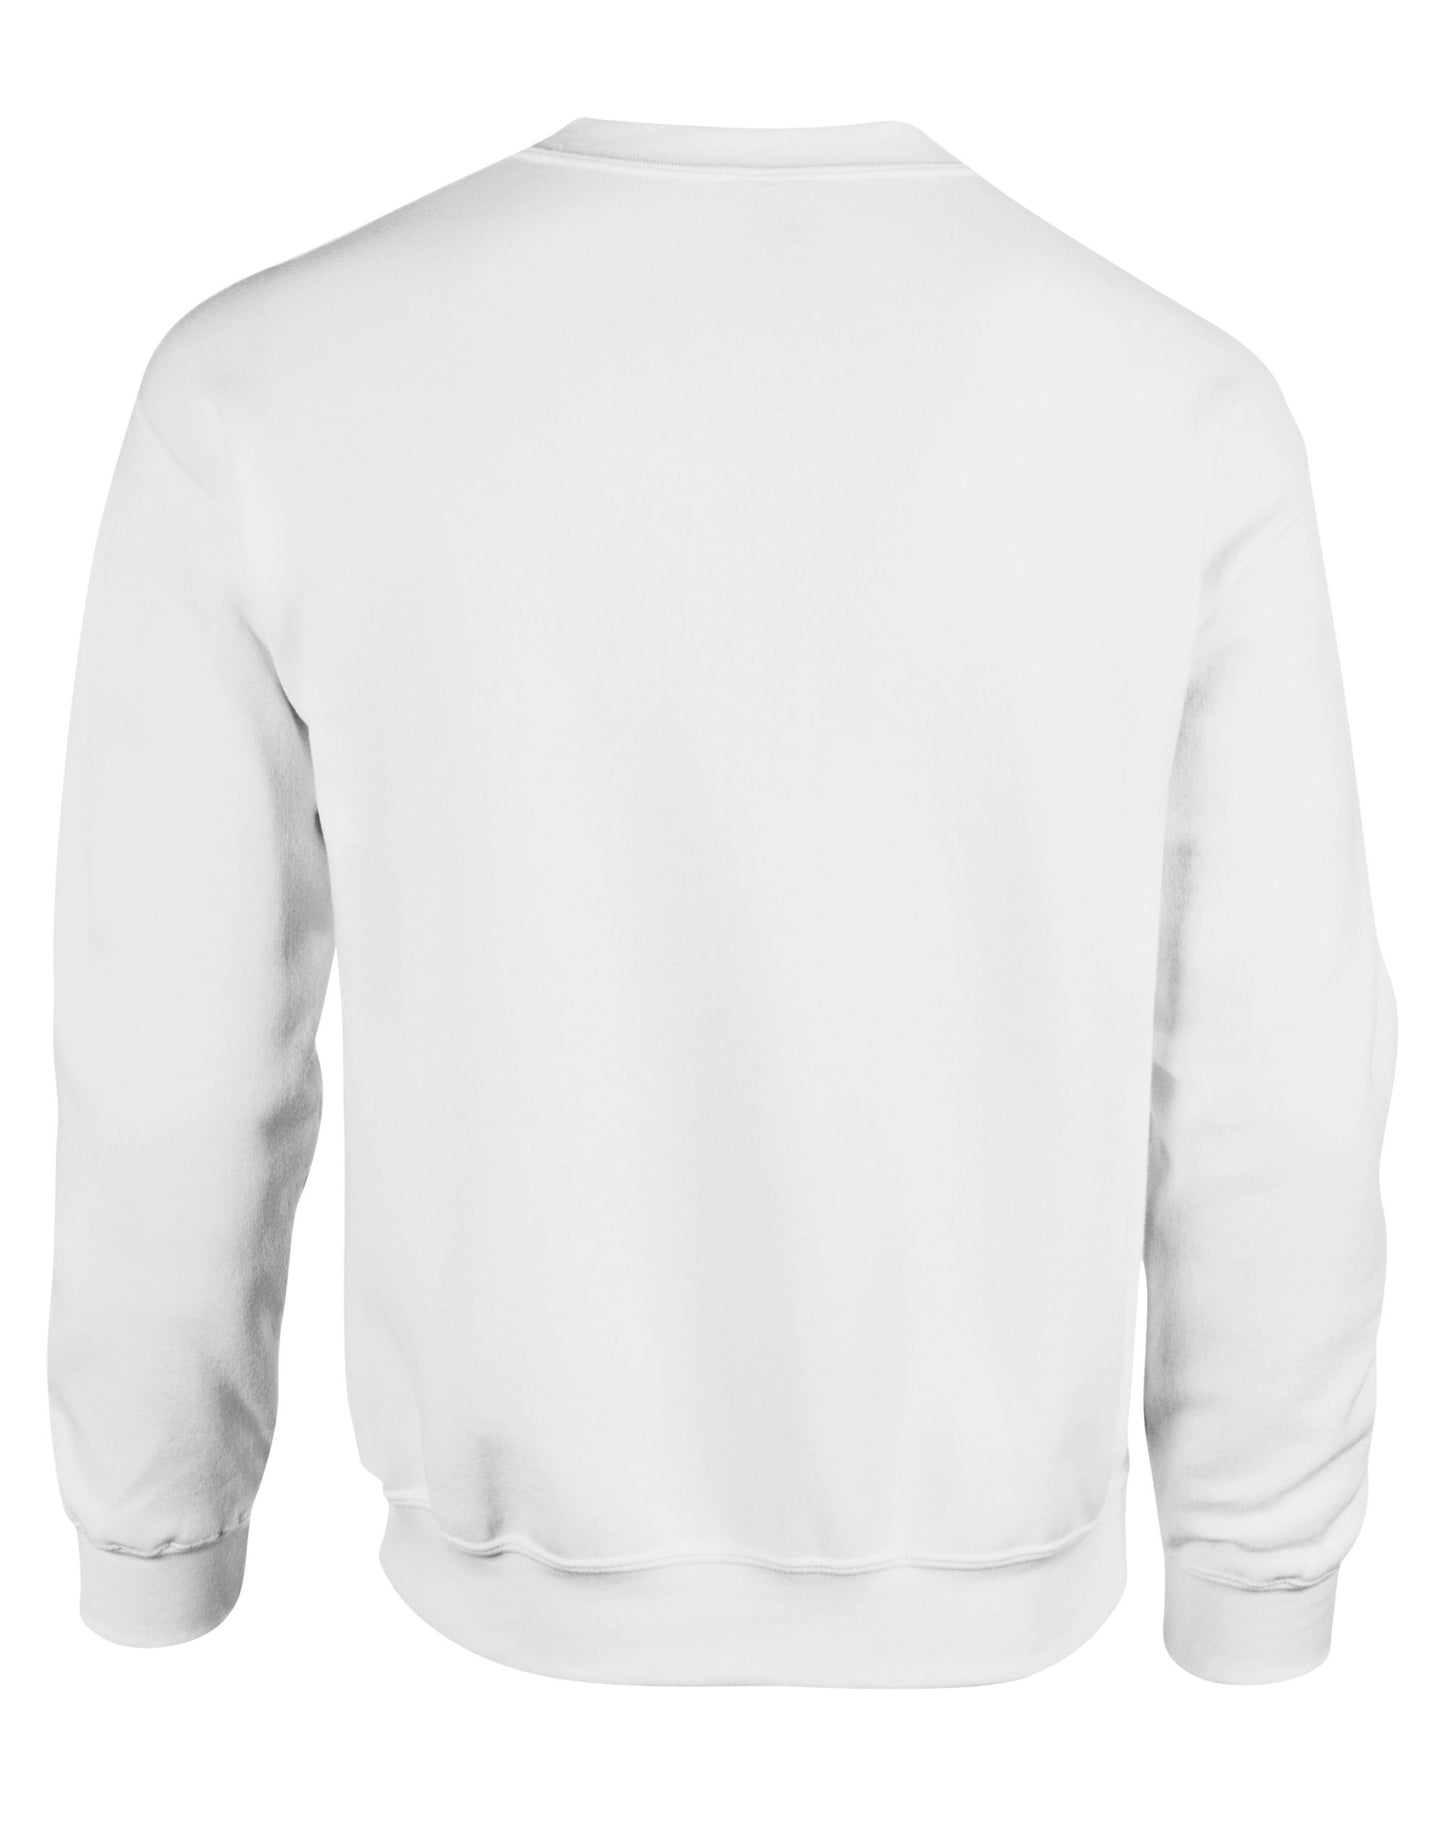 Gildan Heavy Blend Adult Crew Sweatshirt